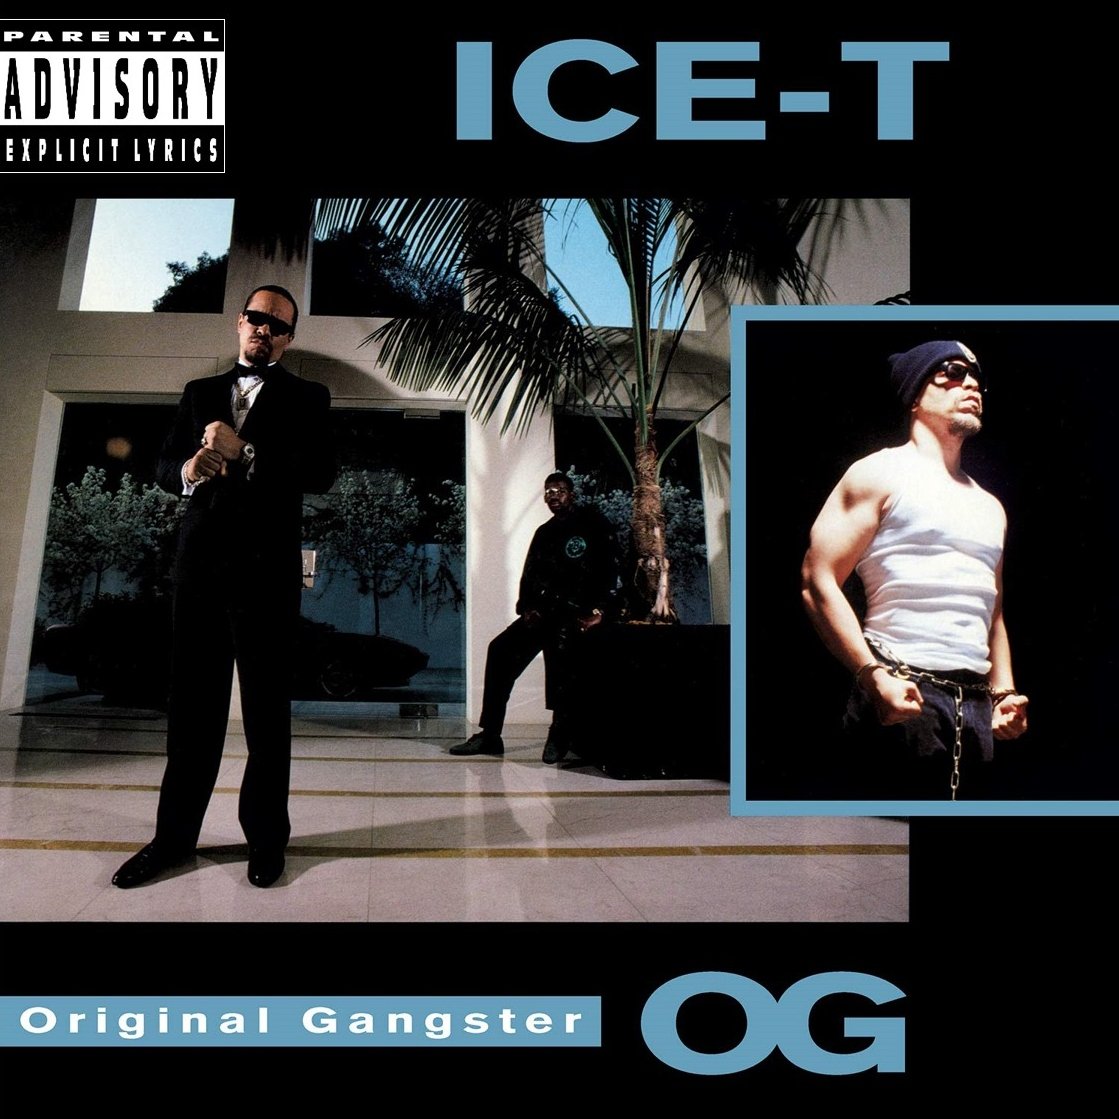 IceT_OG_OriginalGangster_A.jpg